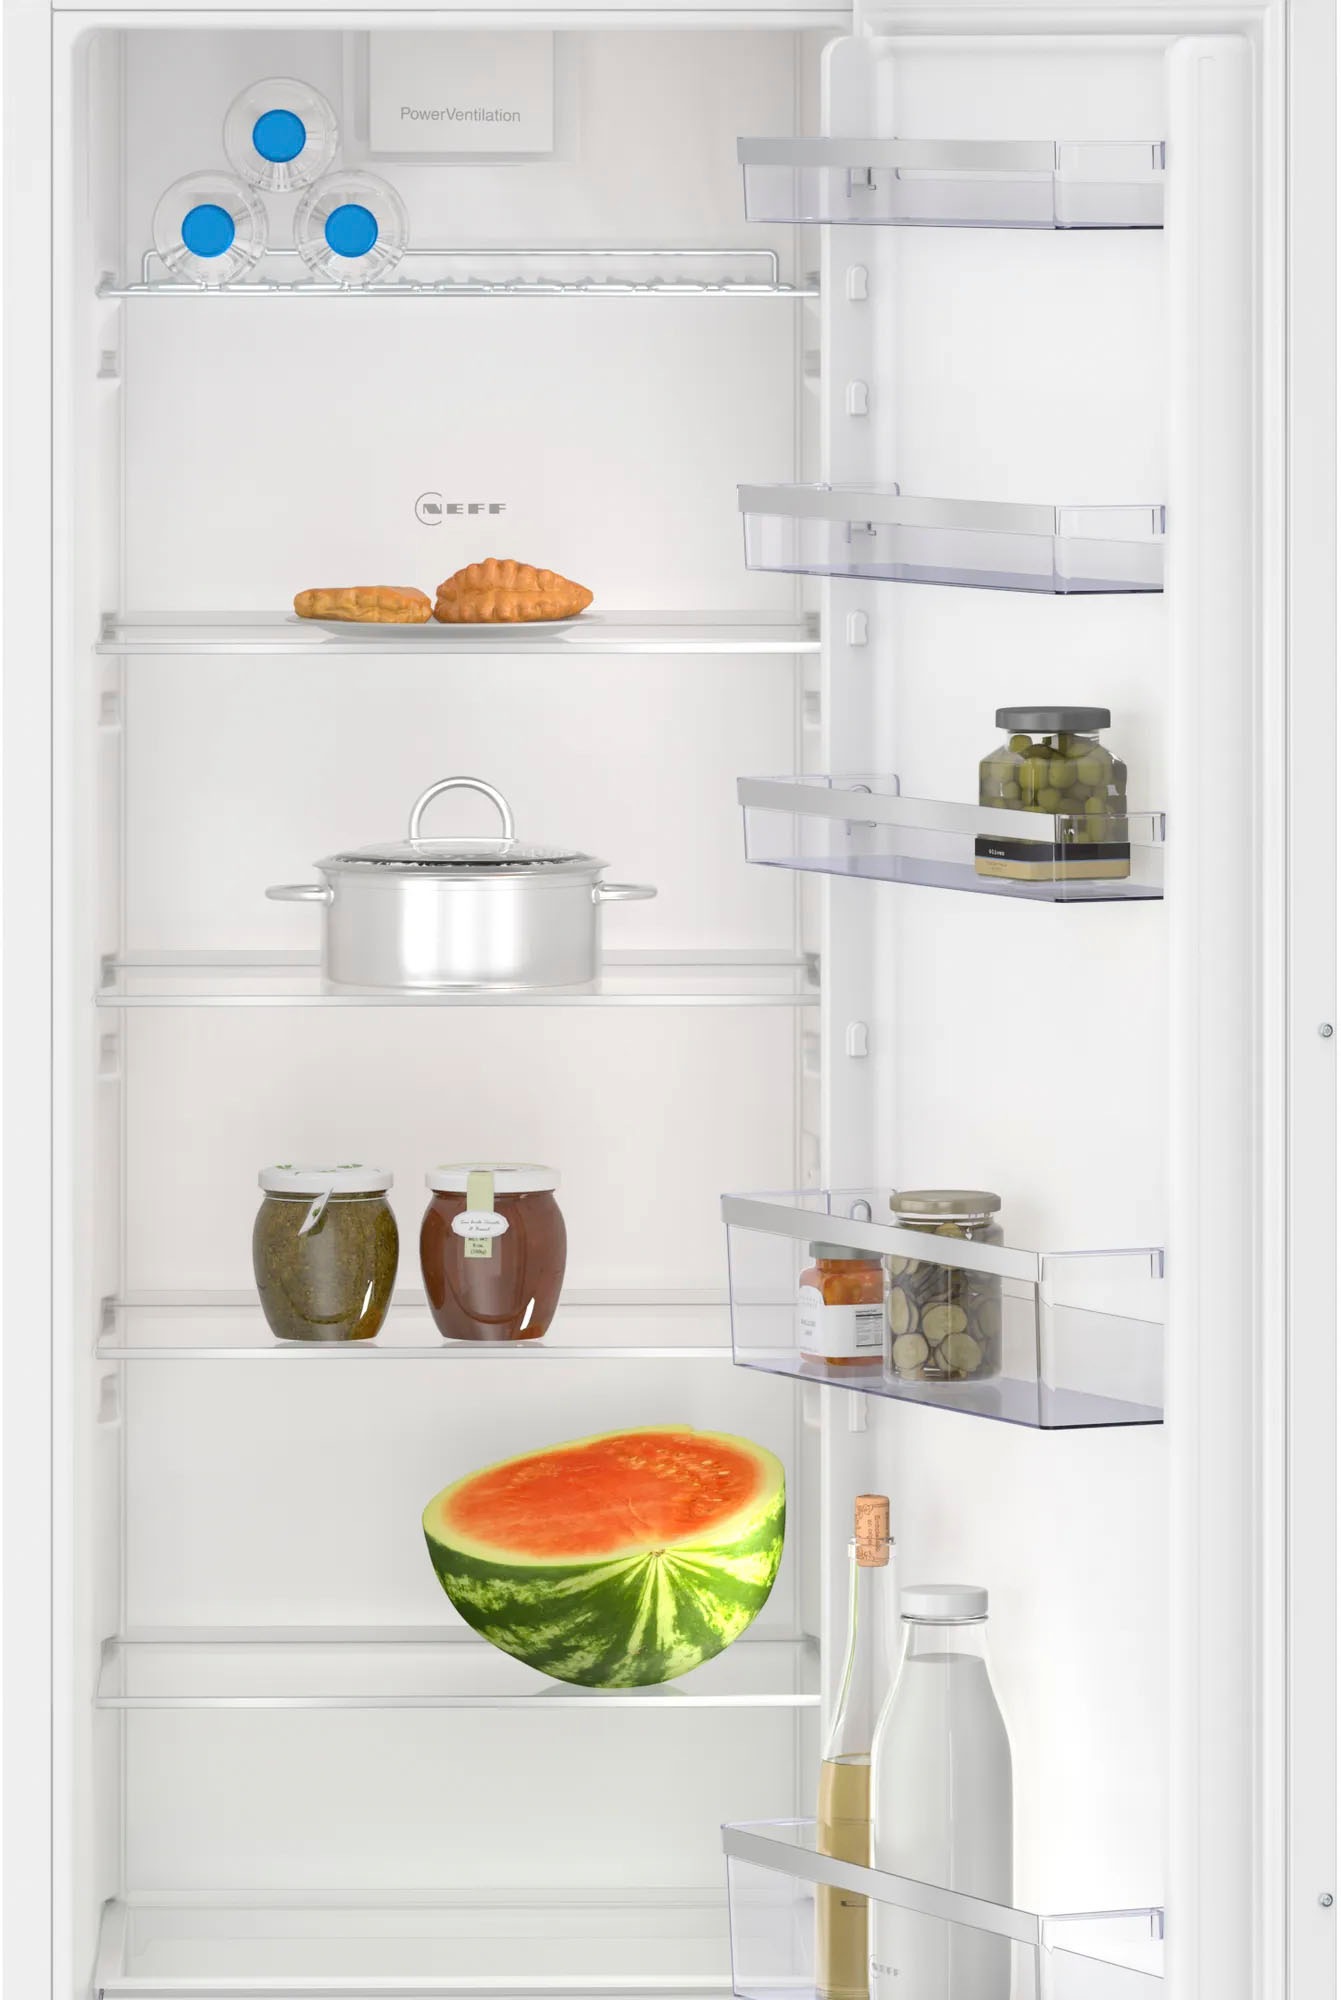 NEFF Einbaukühlschrank »KI1812FE0«, KI1812FE0, 177,2 cm hoch, 54,1 cm breit, Fresh Safe: Schublade für flexible Lagerung von Obst & Gemüse